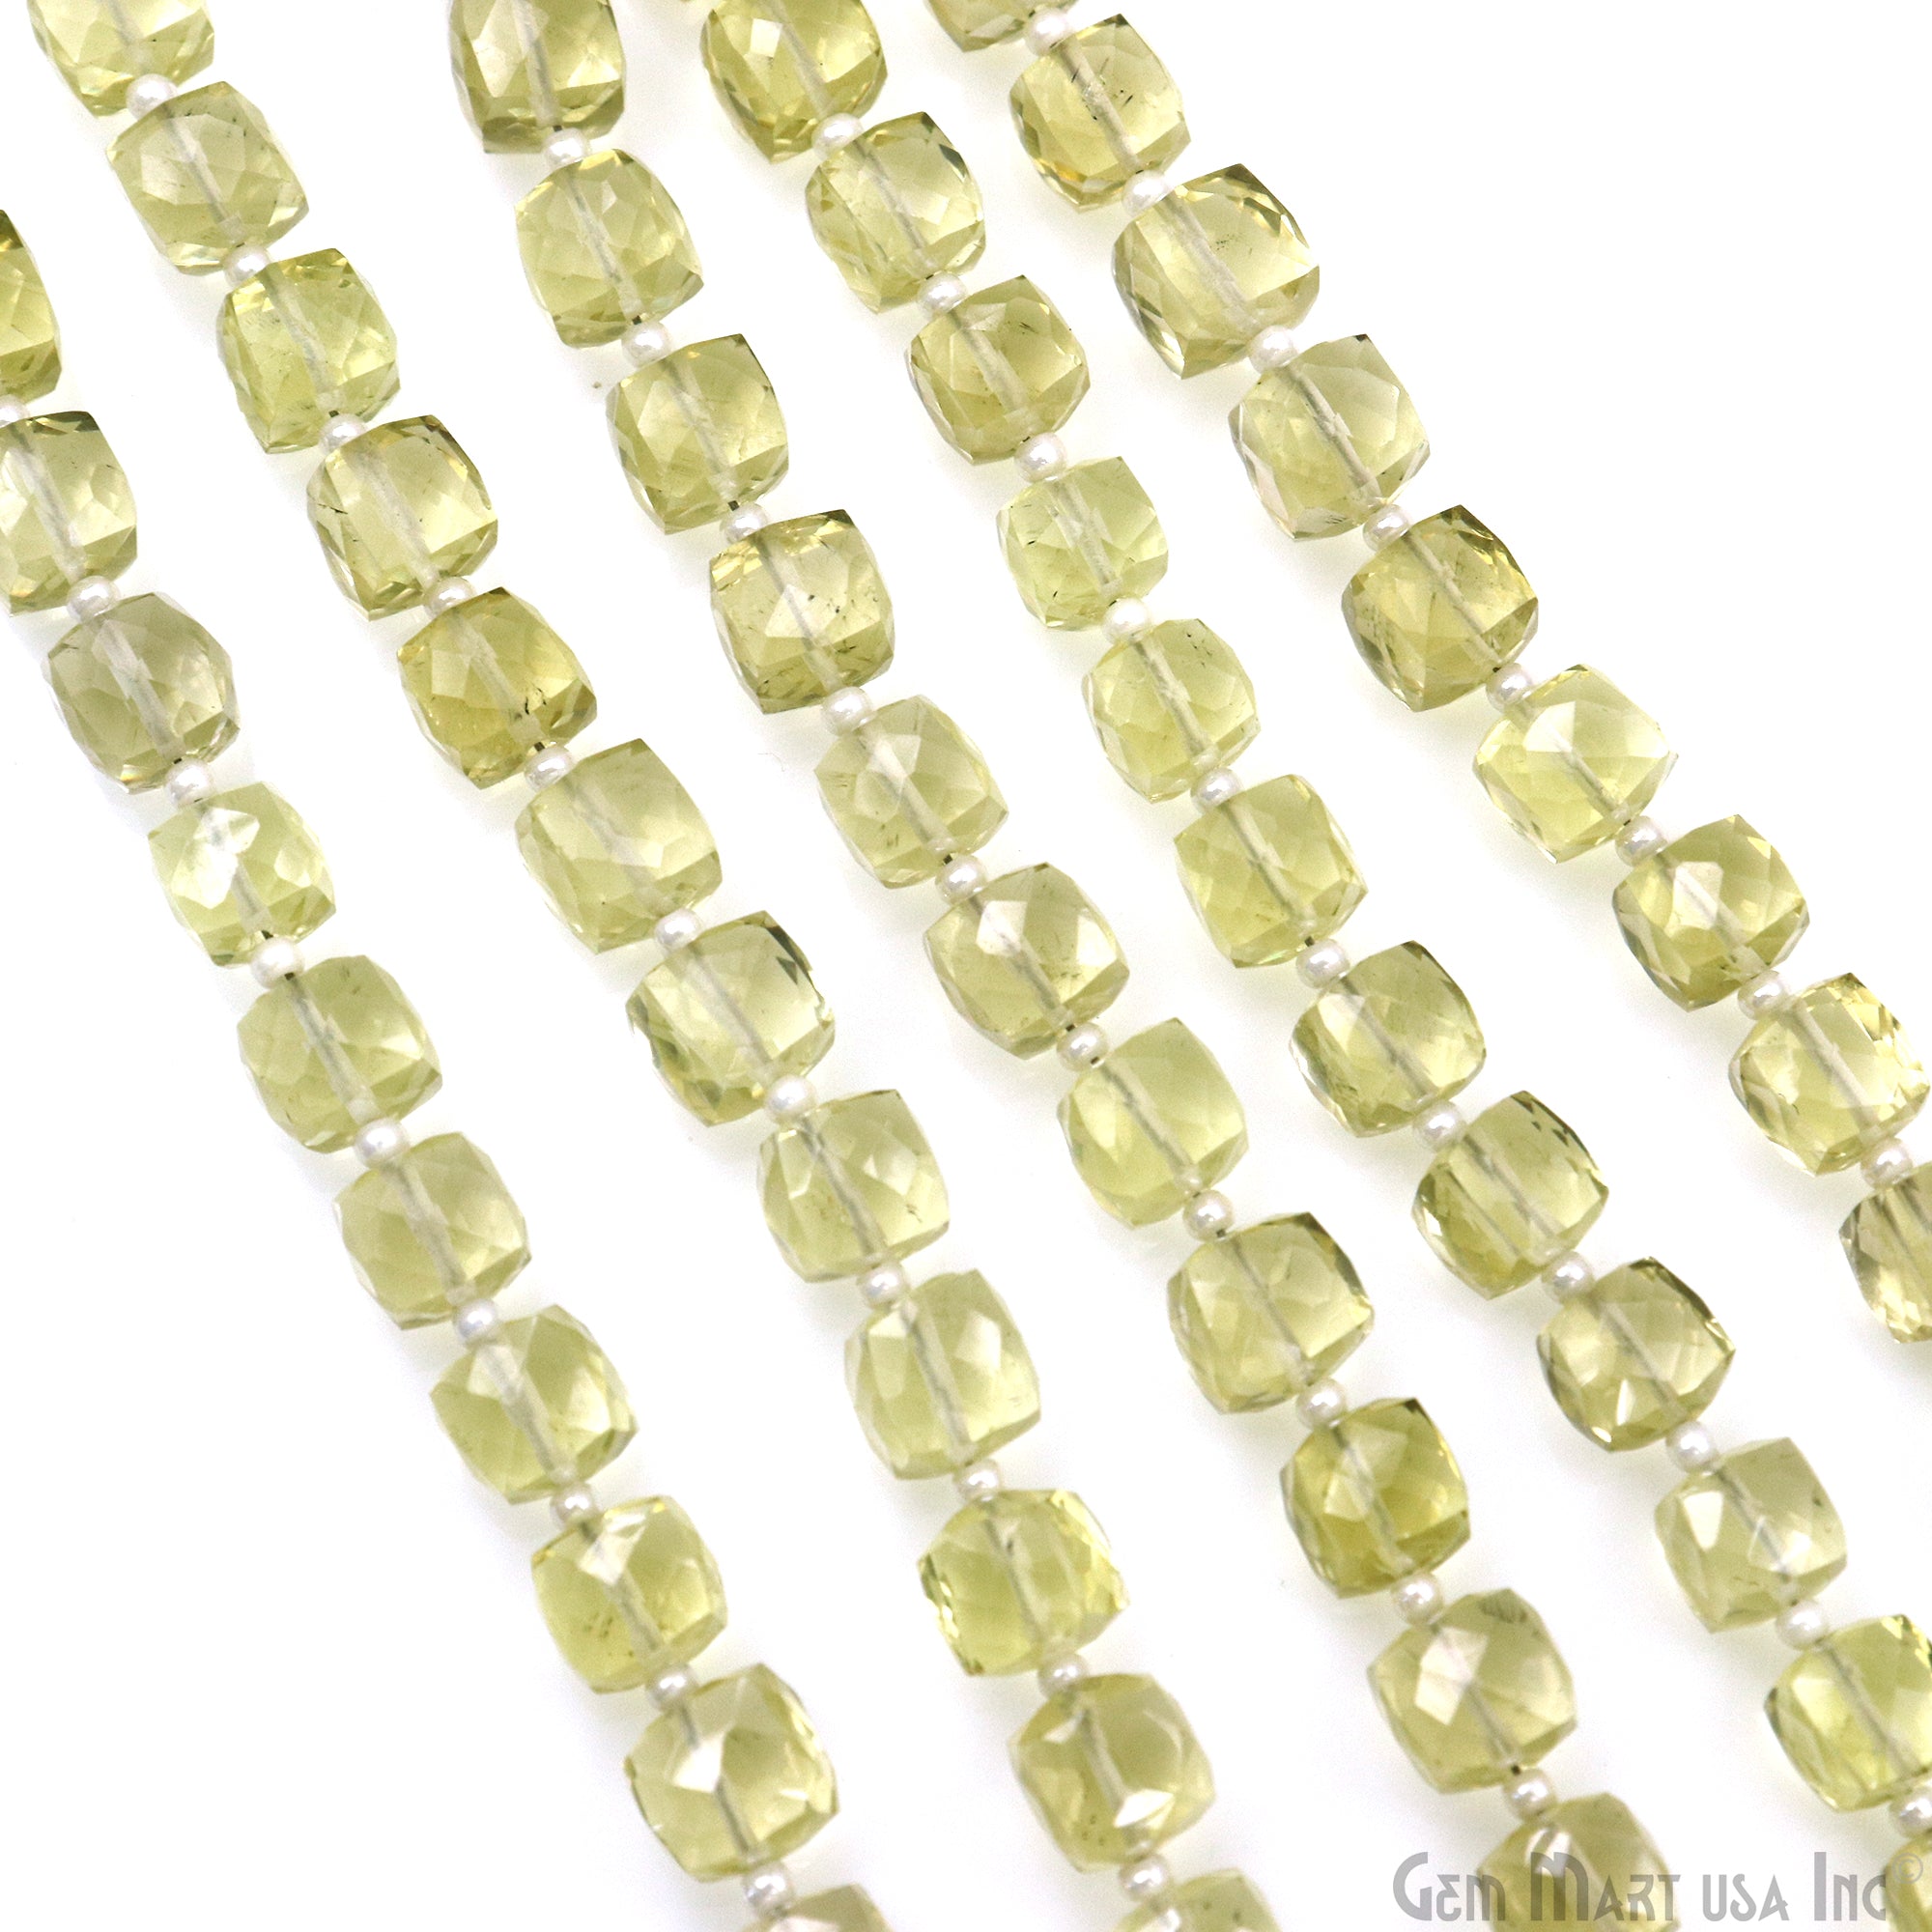 Lemon Topaz Faceted Box Shape 6-7mm Gemstone Beads Strand 7 Inch